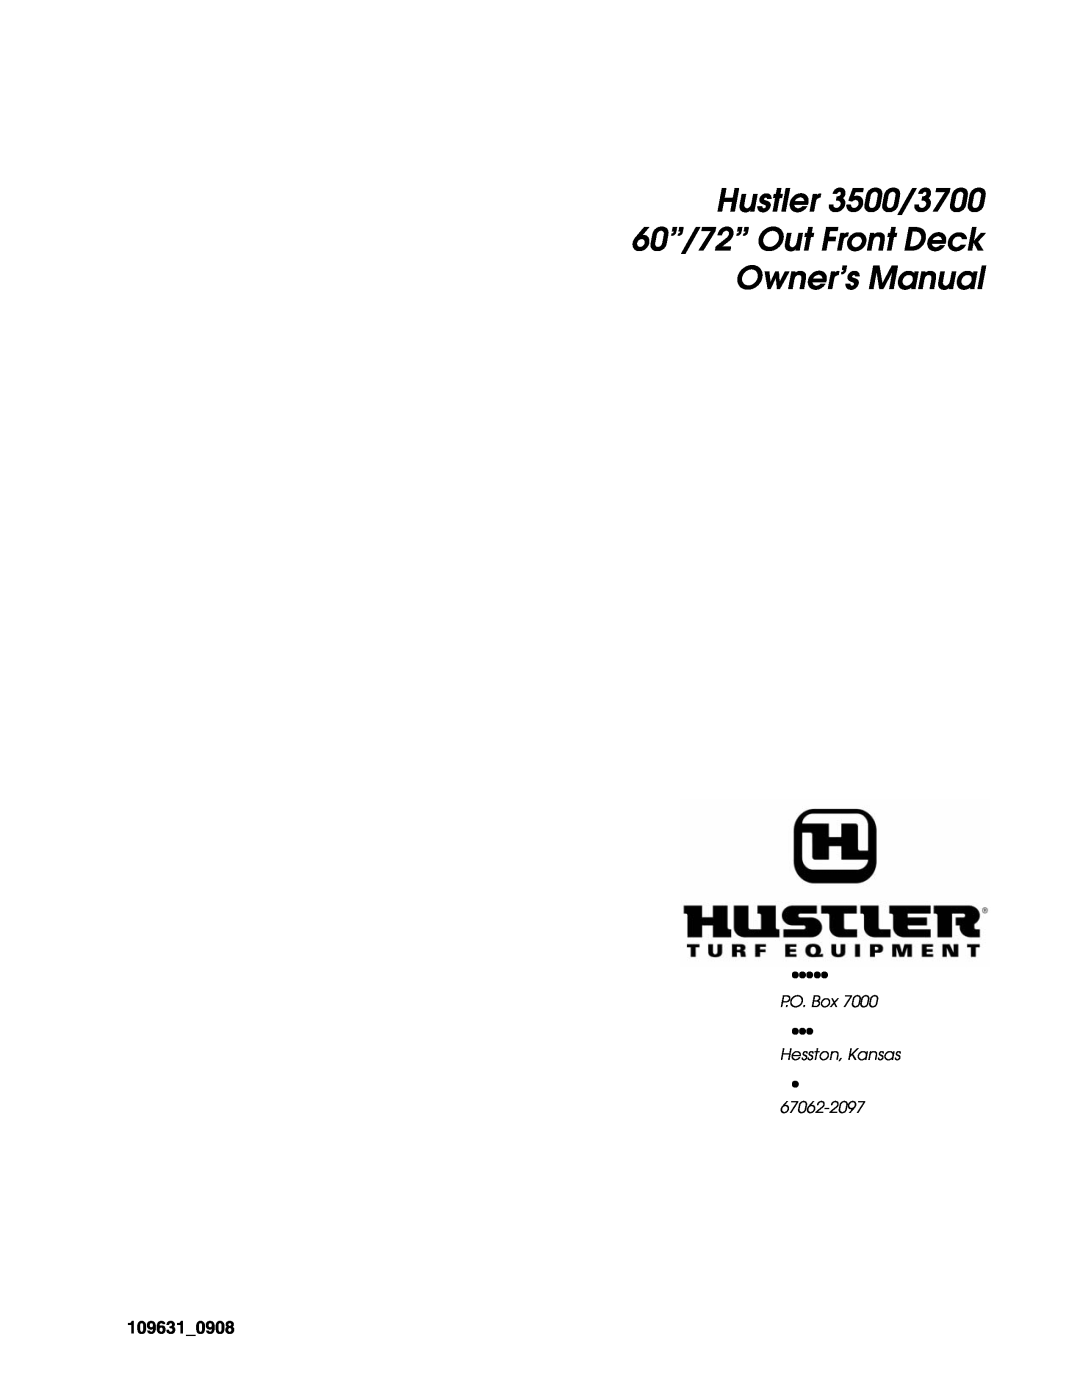 Hustler Turf owner manual 109631, Hustler 3500/3700 60”/72” Out Front Deck, P.O. Box, Hesston, Kansas, 67062-2097 